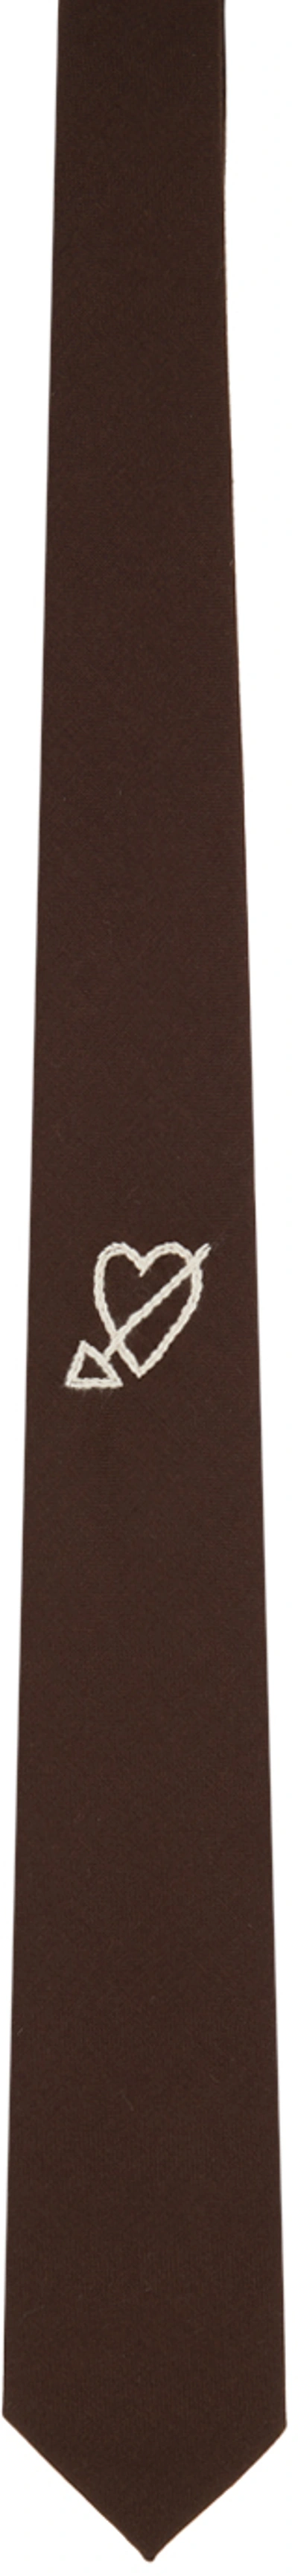 Ernest W Baker Brown Heart Tie In Brown Wool